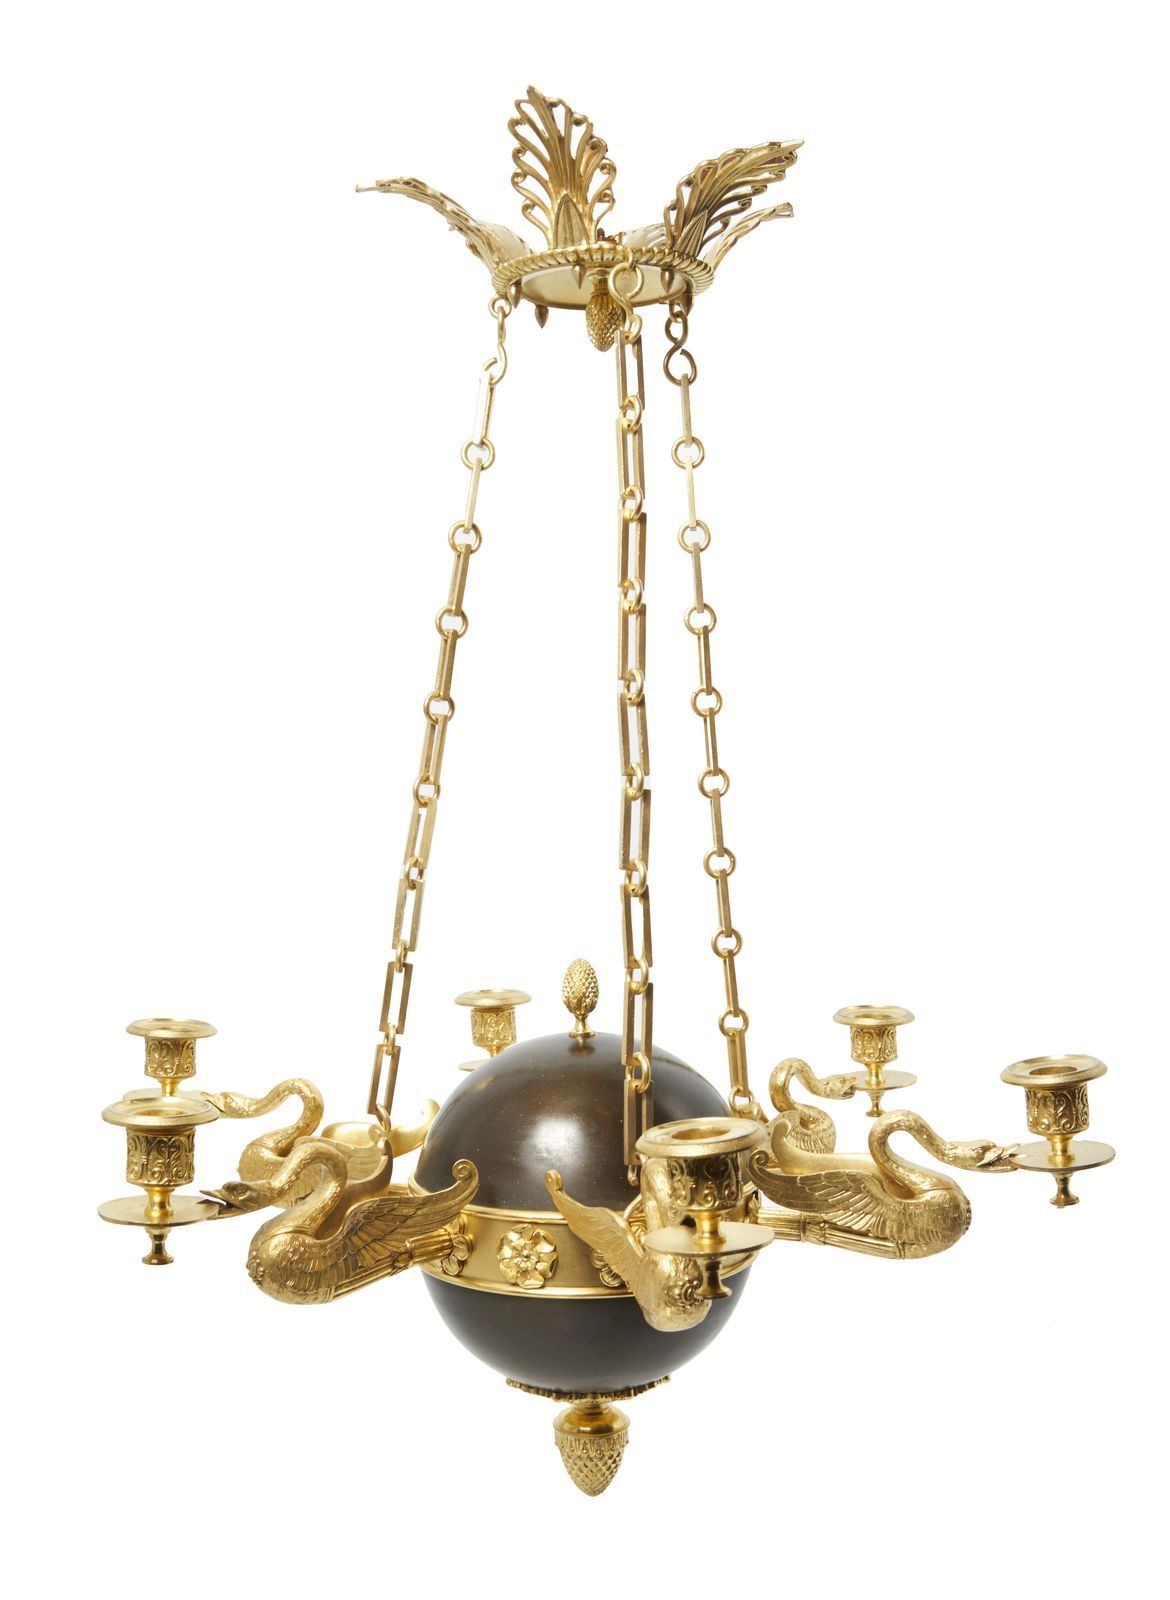 Null 124-小型青铜镀金吊灯，有六个光臂，圆形装饰有天鹅支撑的光臂。

19世纪

高度：73厘米

宽度：54.5厘米